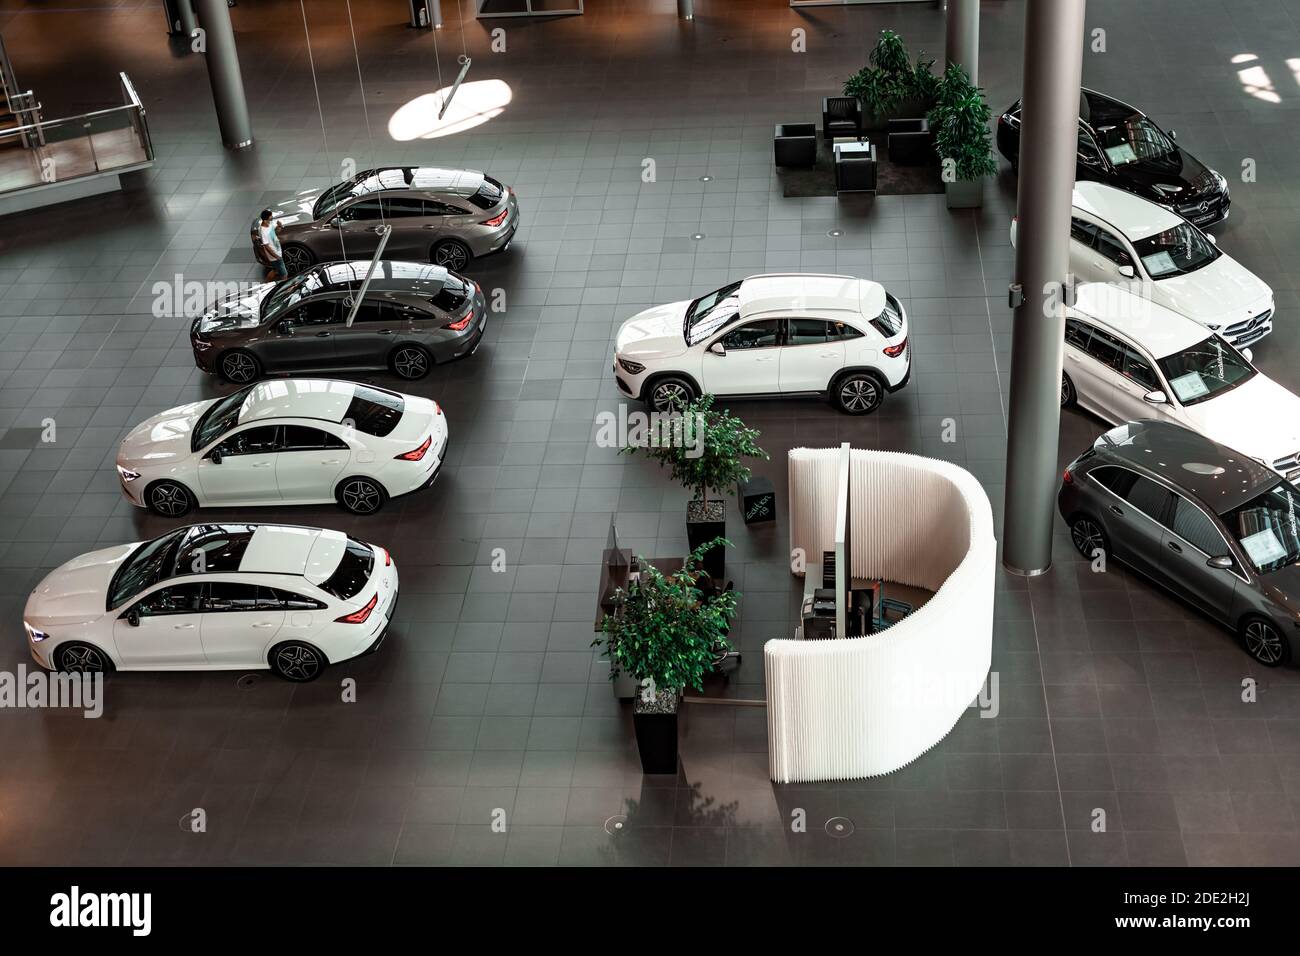 Stuttgart, Alemania - 8 de agosto de 2020: Nuevos modelos de coches en la sala de exposición de mercedes benz Foto de stock